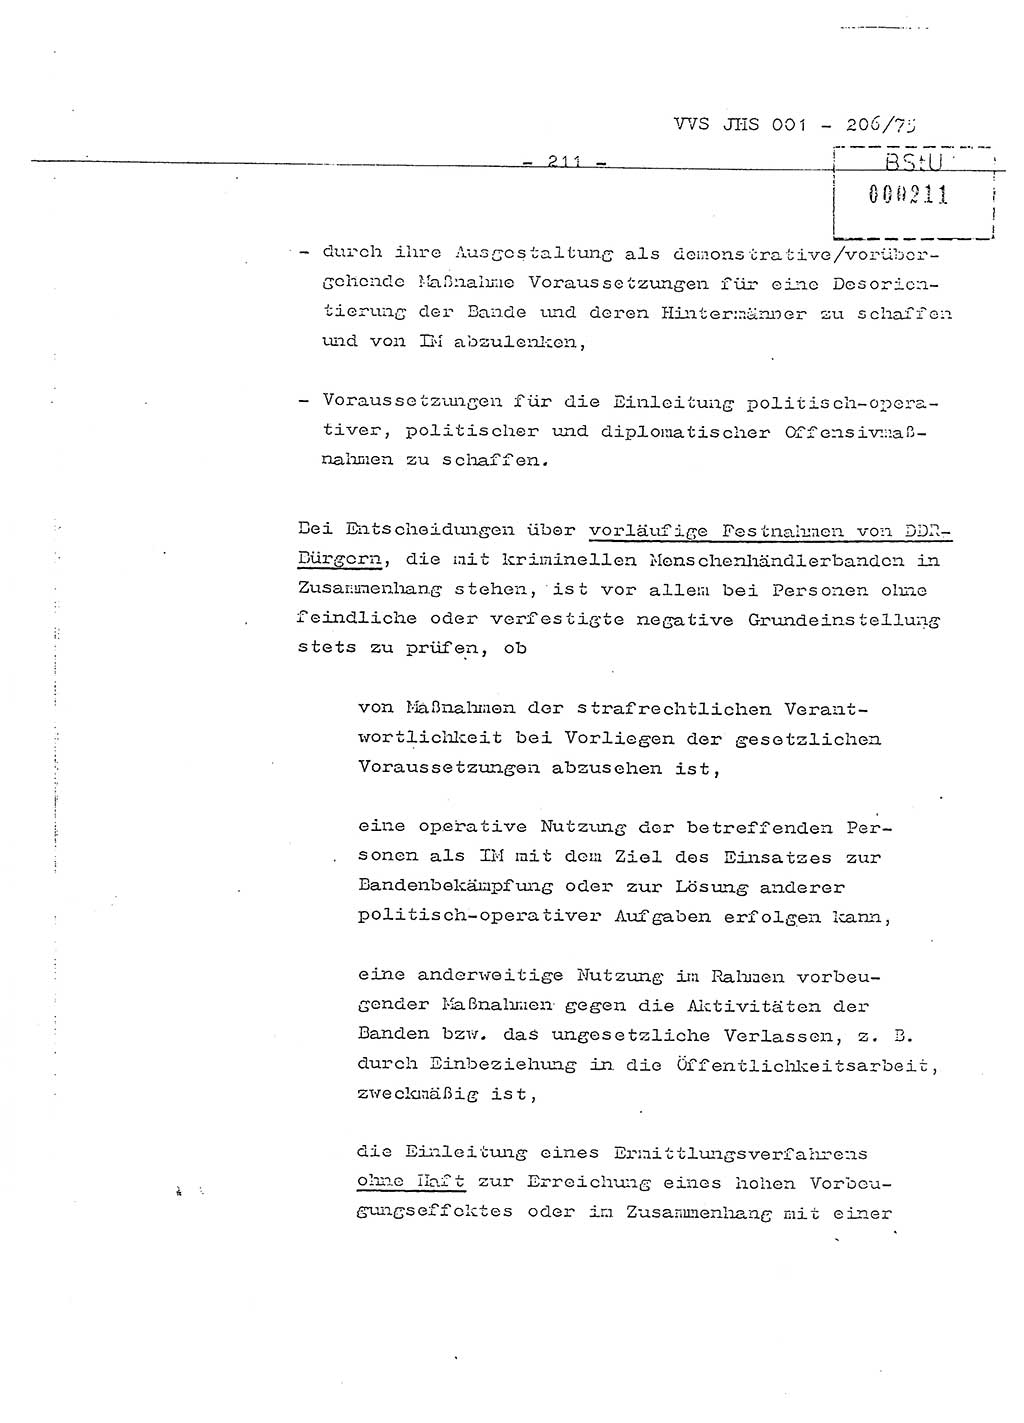 Dissertation Generalmajor Manfred Hummitzsch (Leiter der BV Leipzig), Generalmajor Heinz Fiedler (HA Ⅵ), Oberst Rolf Fister (HA Ⅸ), Ministerium für Staatssicherheit (MfS) [Deutsche Demokratische Republik (DDR)], Juristische Hochschule (JHS), Vertrauliche Verschlußsache (VVS) 001-206/75, Potsdam 1975, Seite 211 (Diss. MfS DDR JHS VVS 001-206/75 1975, S. 211)